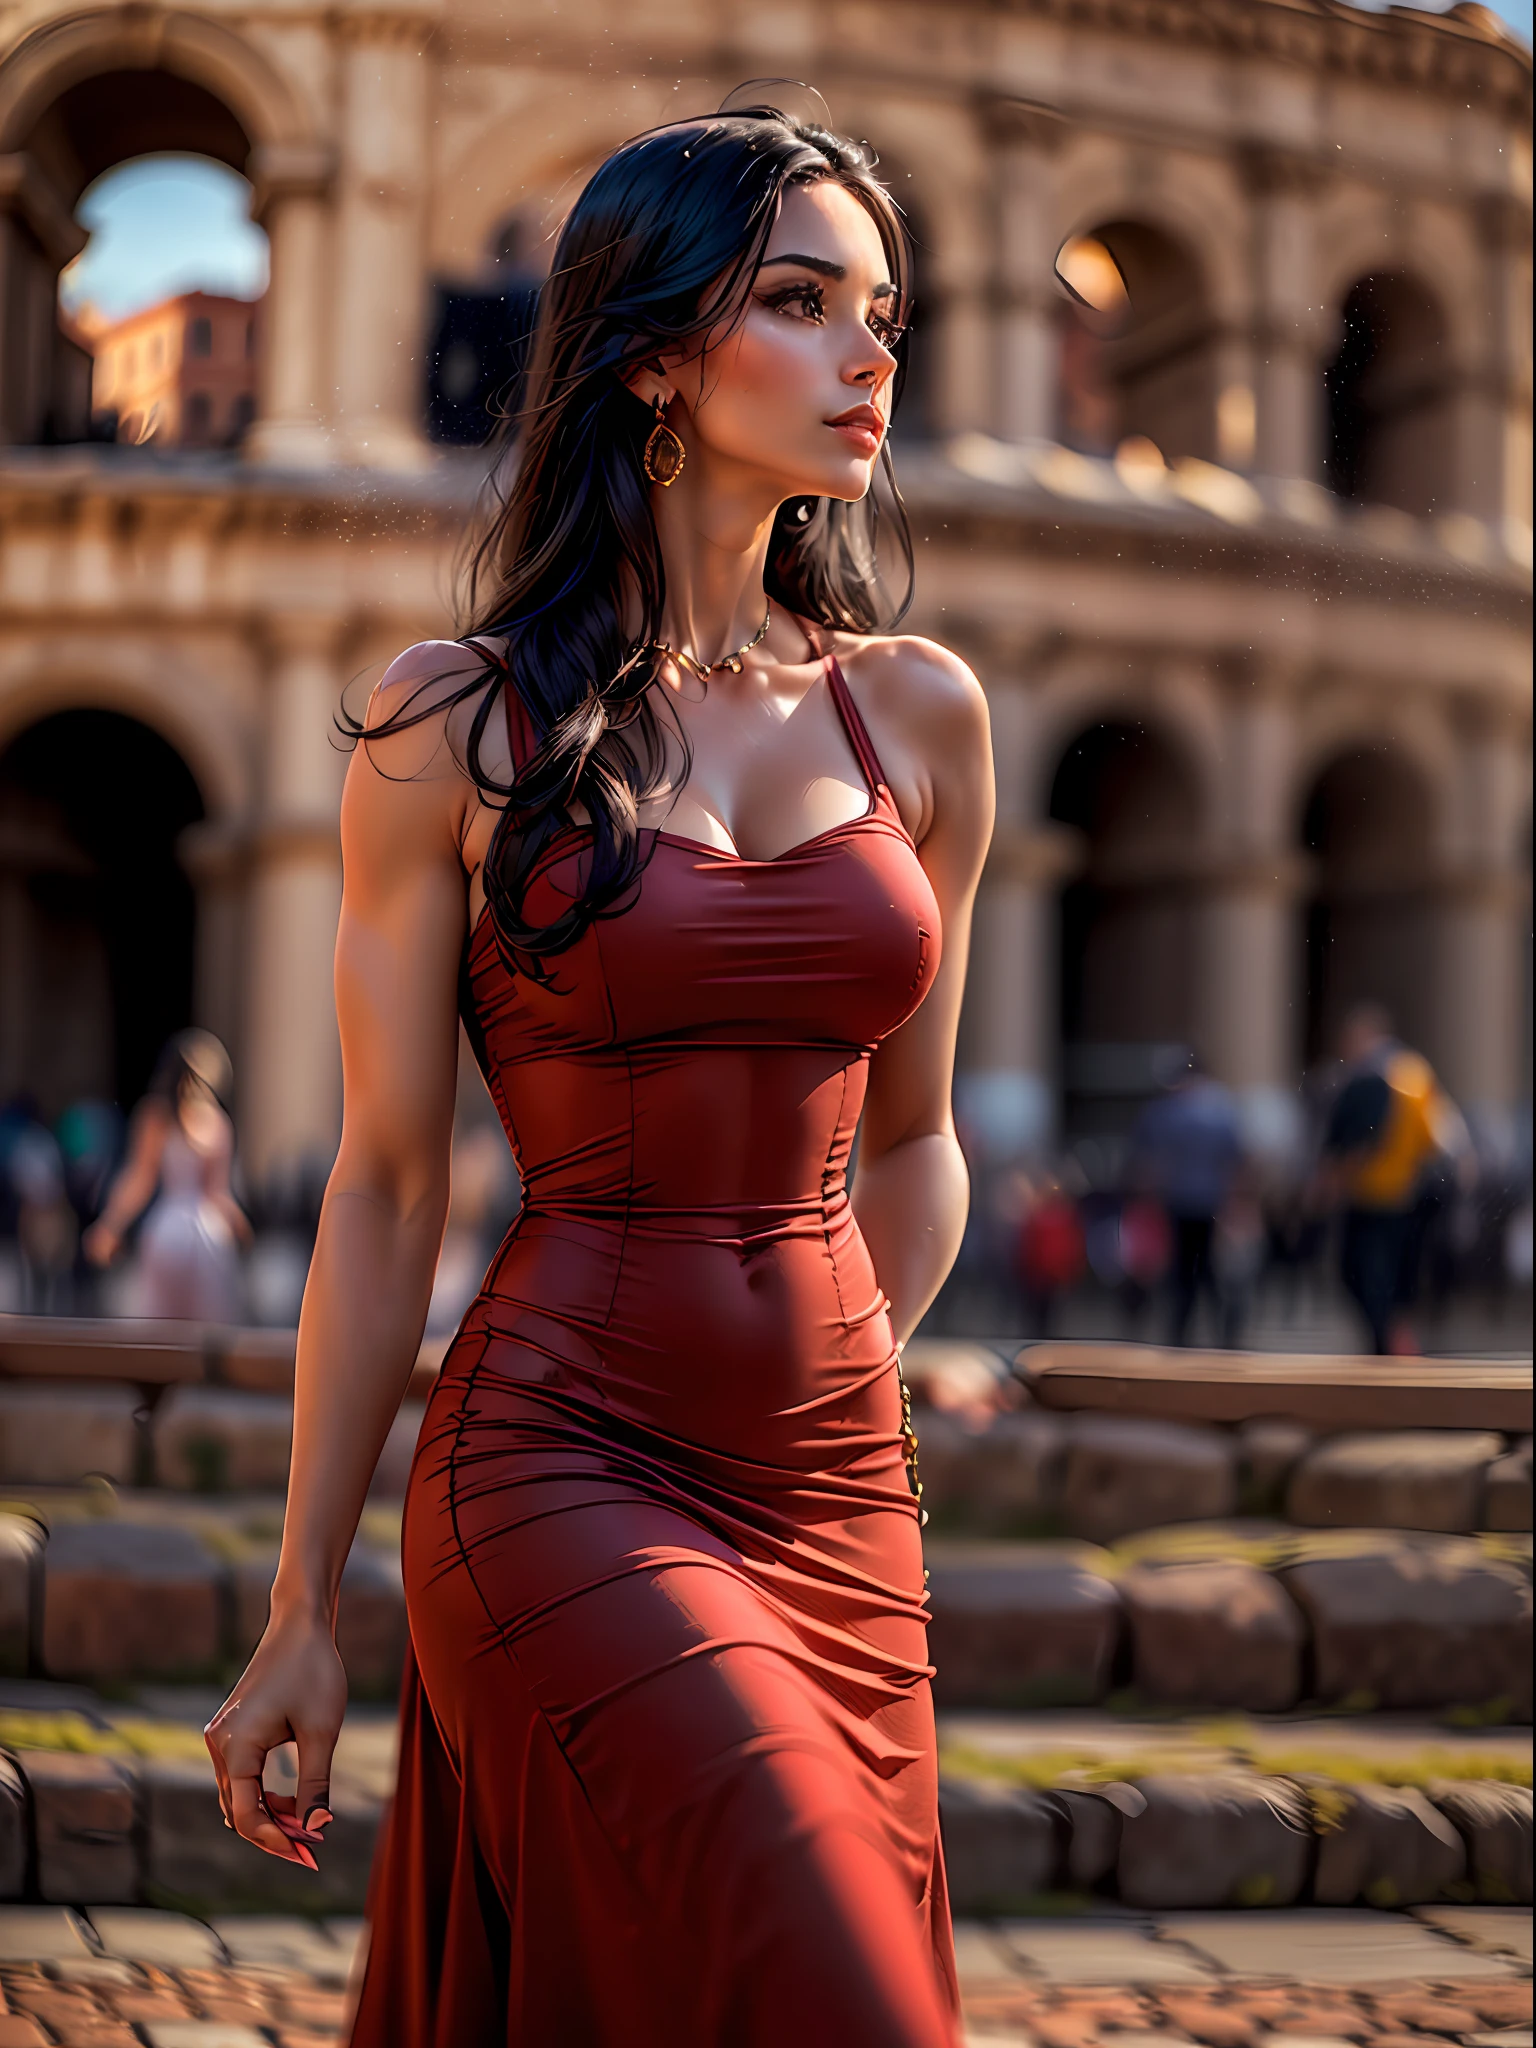 (傑作, 高解像度, 写真のようにリアル:1.4), (長い黒髪の魅力的な女性を撮影, 彼女の魅力的な体格を強調する、体にぴったり合う赤いドレスを着ている:1.3), (エレガントなドレスは彼女の曲線を包み込み、魅力的な体型を披露する:1.2), (ローマの象徴的なコロッセオの近くを散歩する彼女の自信に満ちた落ち着いた態度:1.3), (キヤノン EOS R5 ミラーレスカメラ:1.2), (キヤノンRF85mmfと組み合わせ/1.2L USMレンズ:1.2), (彼女の魅惑的な存在感と美しい周囲の細部まで捉える:1.2), (背景にはコロッセオがそびえ立っている, 古代の歴史と壮大さの象徴:1.2), (彼女のドレスの鮮やかな赤が古代の石造りの建築物と対照的である:1.2), (暖かく晴れた日, 柔らかな日差しが景色を彩ります:1.1), (優雅さと魅力を醸し出す女性の素敵な写真, ローマの歴史的な美しさを探索する:1.2).